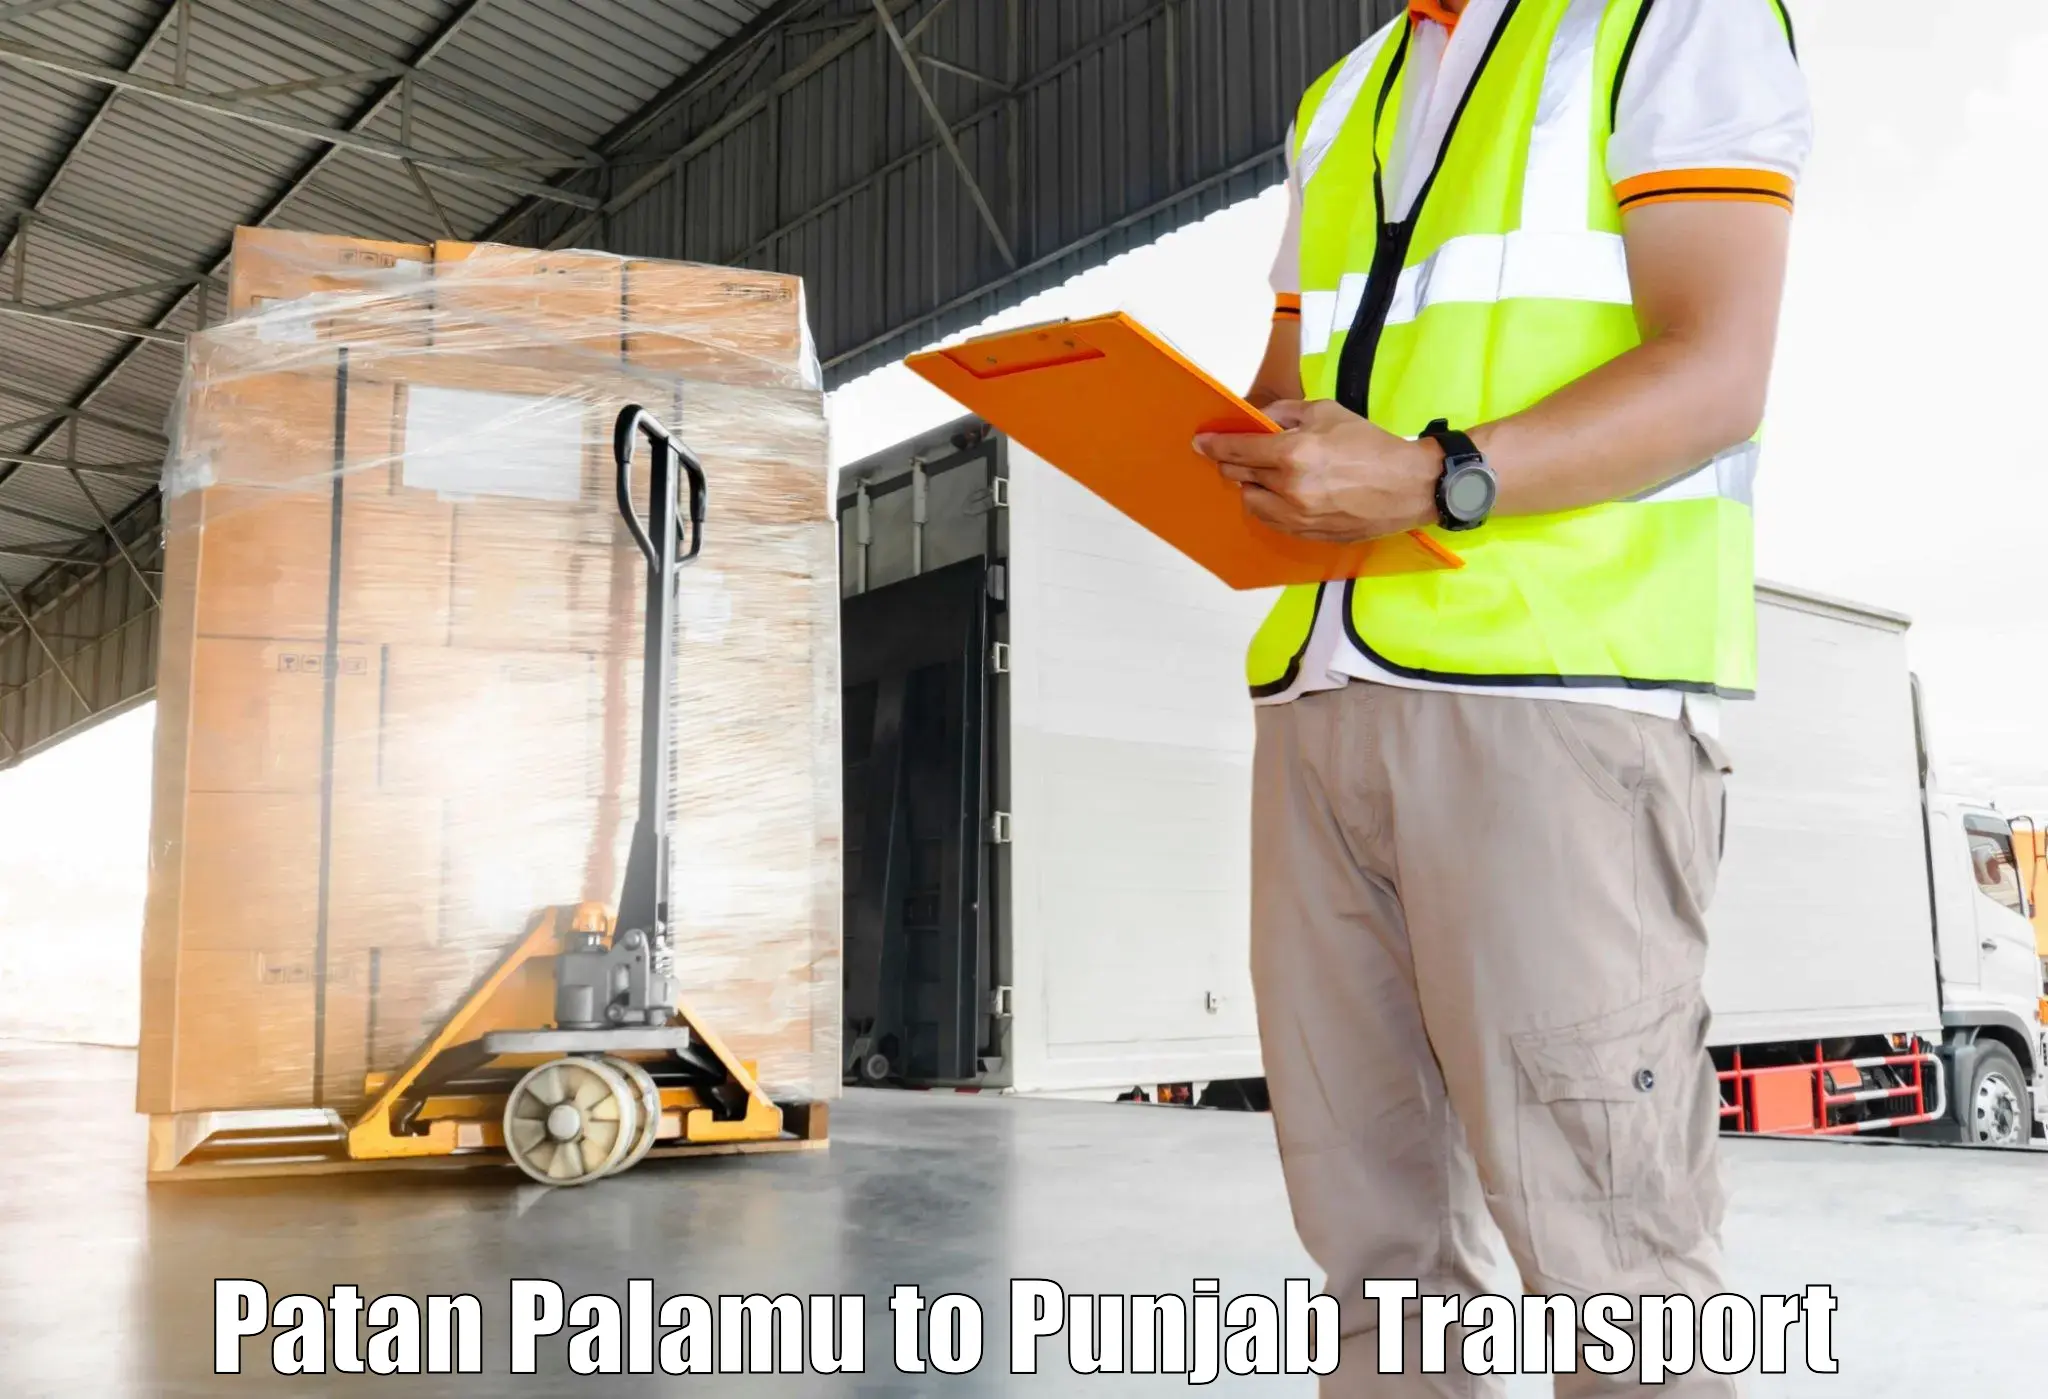 All India transport service Patan Palamu to Ajnala